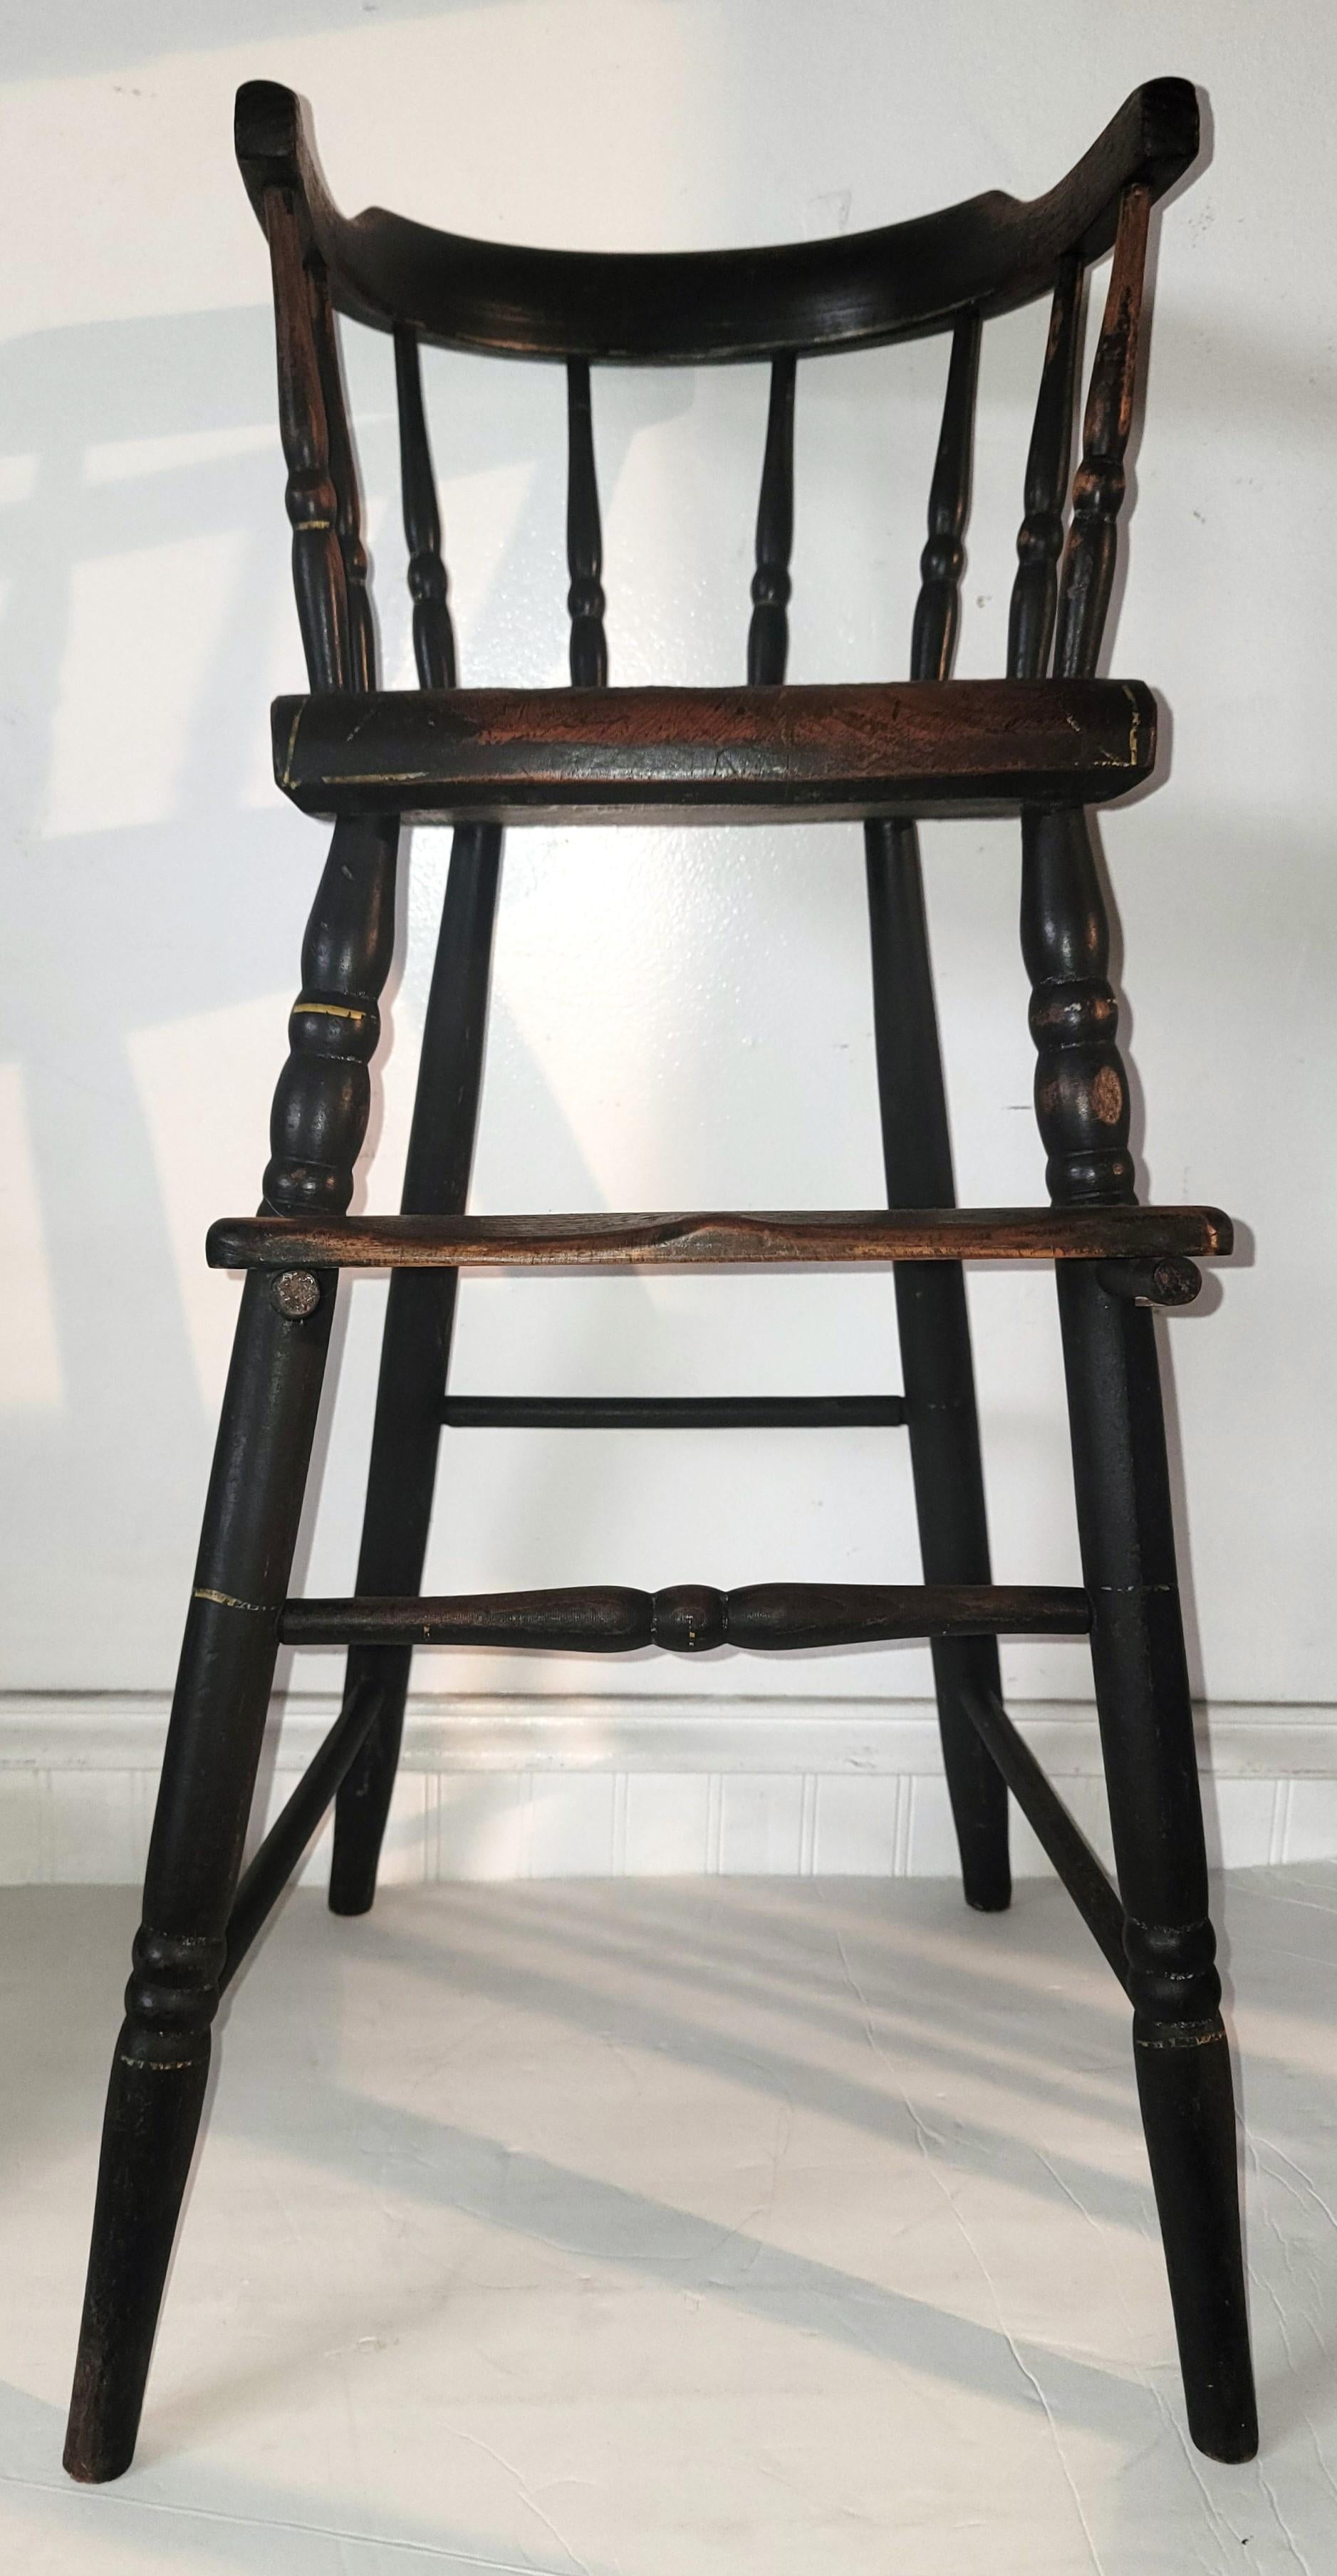 Début 19ème original peint  de l'enfant  Chaise haute de Nouvelle-Angleterre - Circa 1840s
Merveilleuse chaise d'enfant en bois en très bon état. Cette chaise est une chaise haute destinée à être mise à niveau à la table du dîner. Le siège enfant